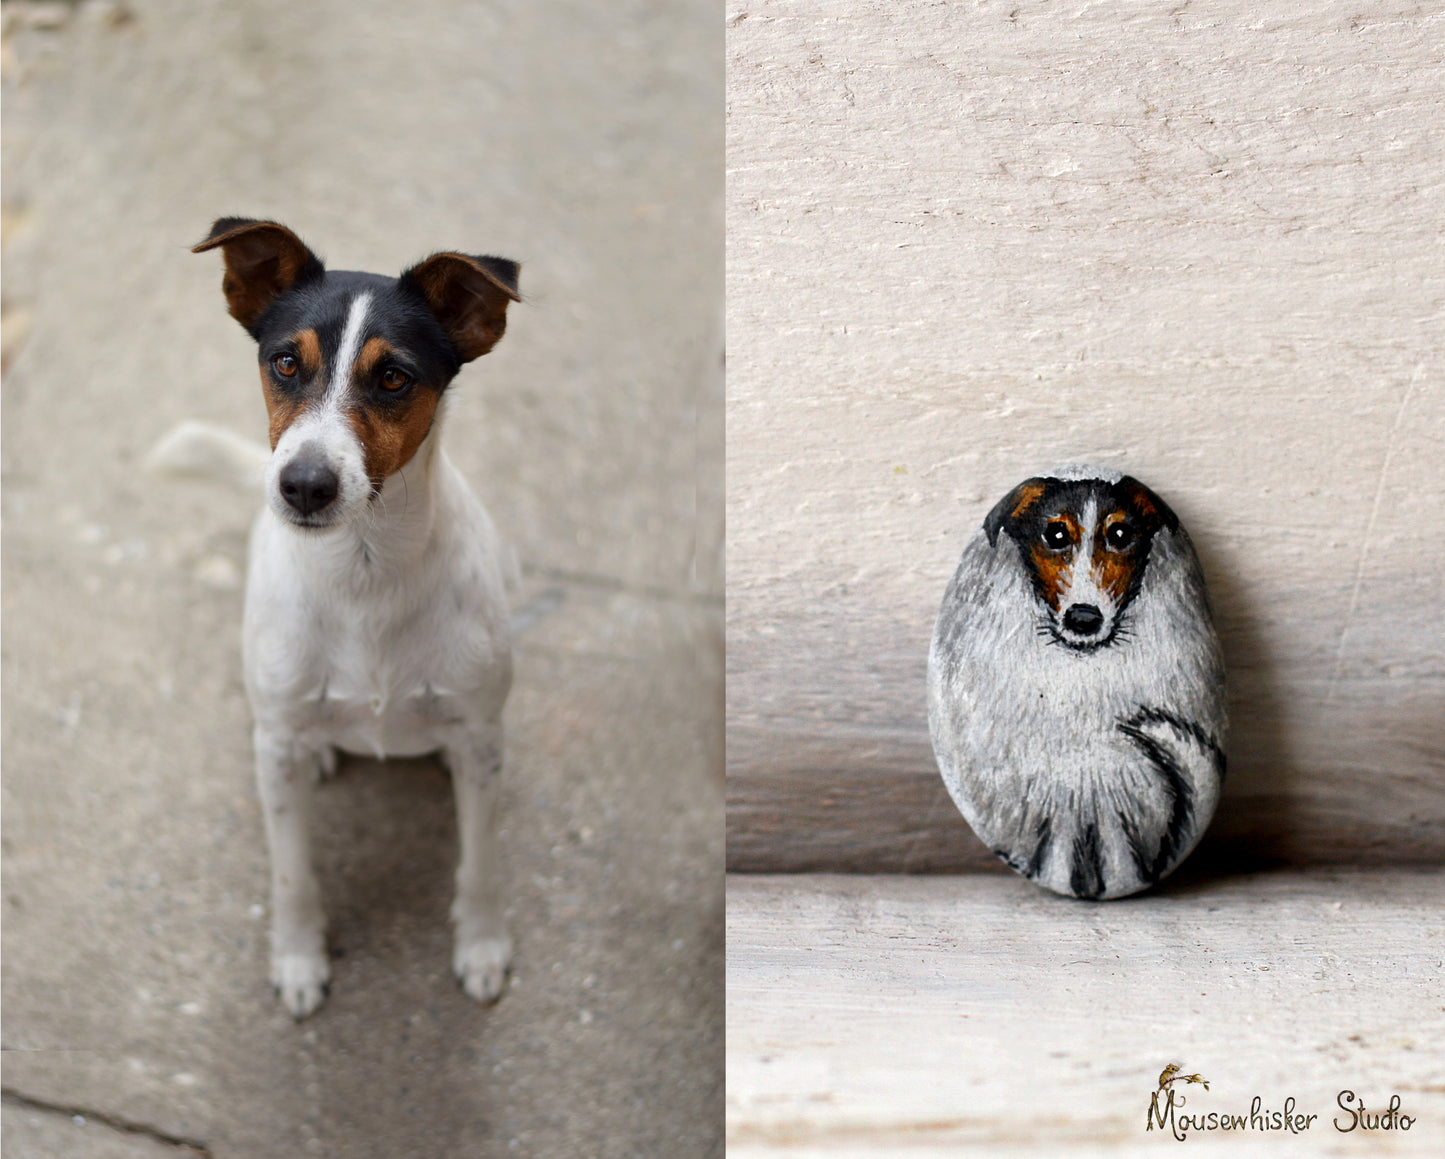 Gift Voucher for a Pebble Pet Portrait